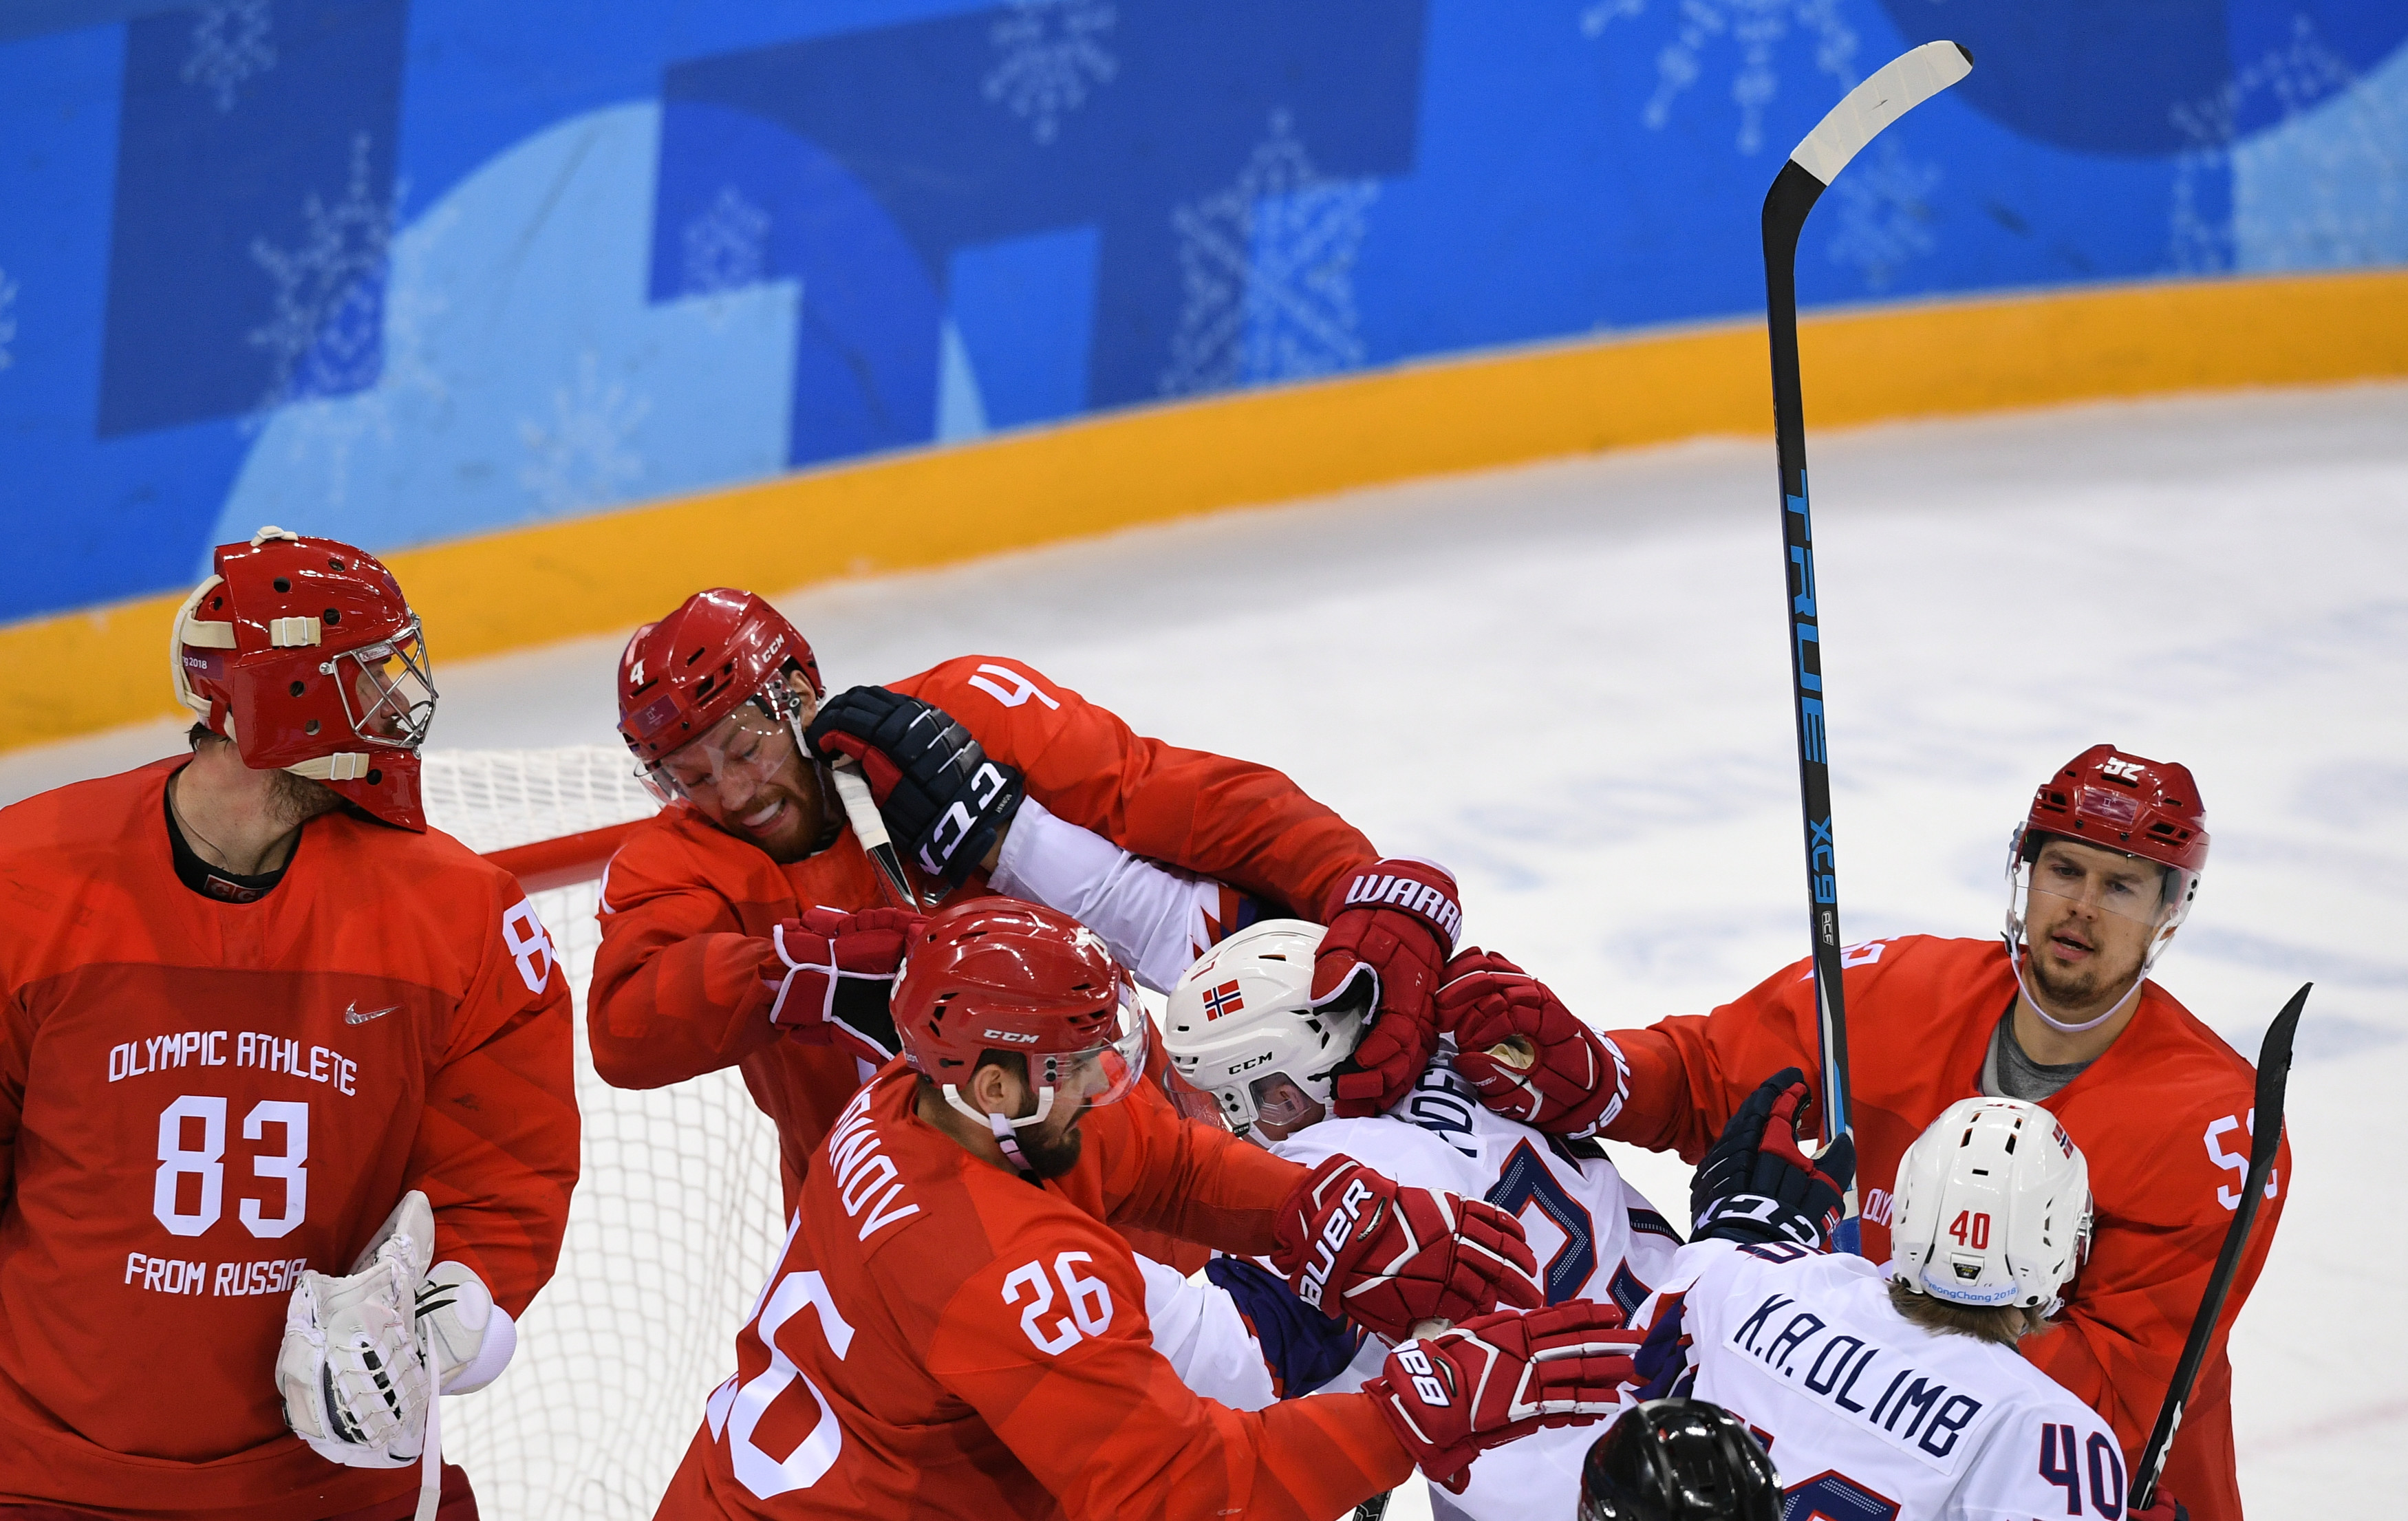 Небольшая потасовка завязалась между российскими и норвежскими хоккеистами в четвертьфинальном матче. Фото: © РИА Новости/Александр Вильф